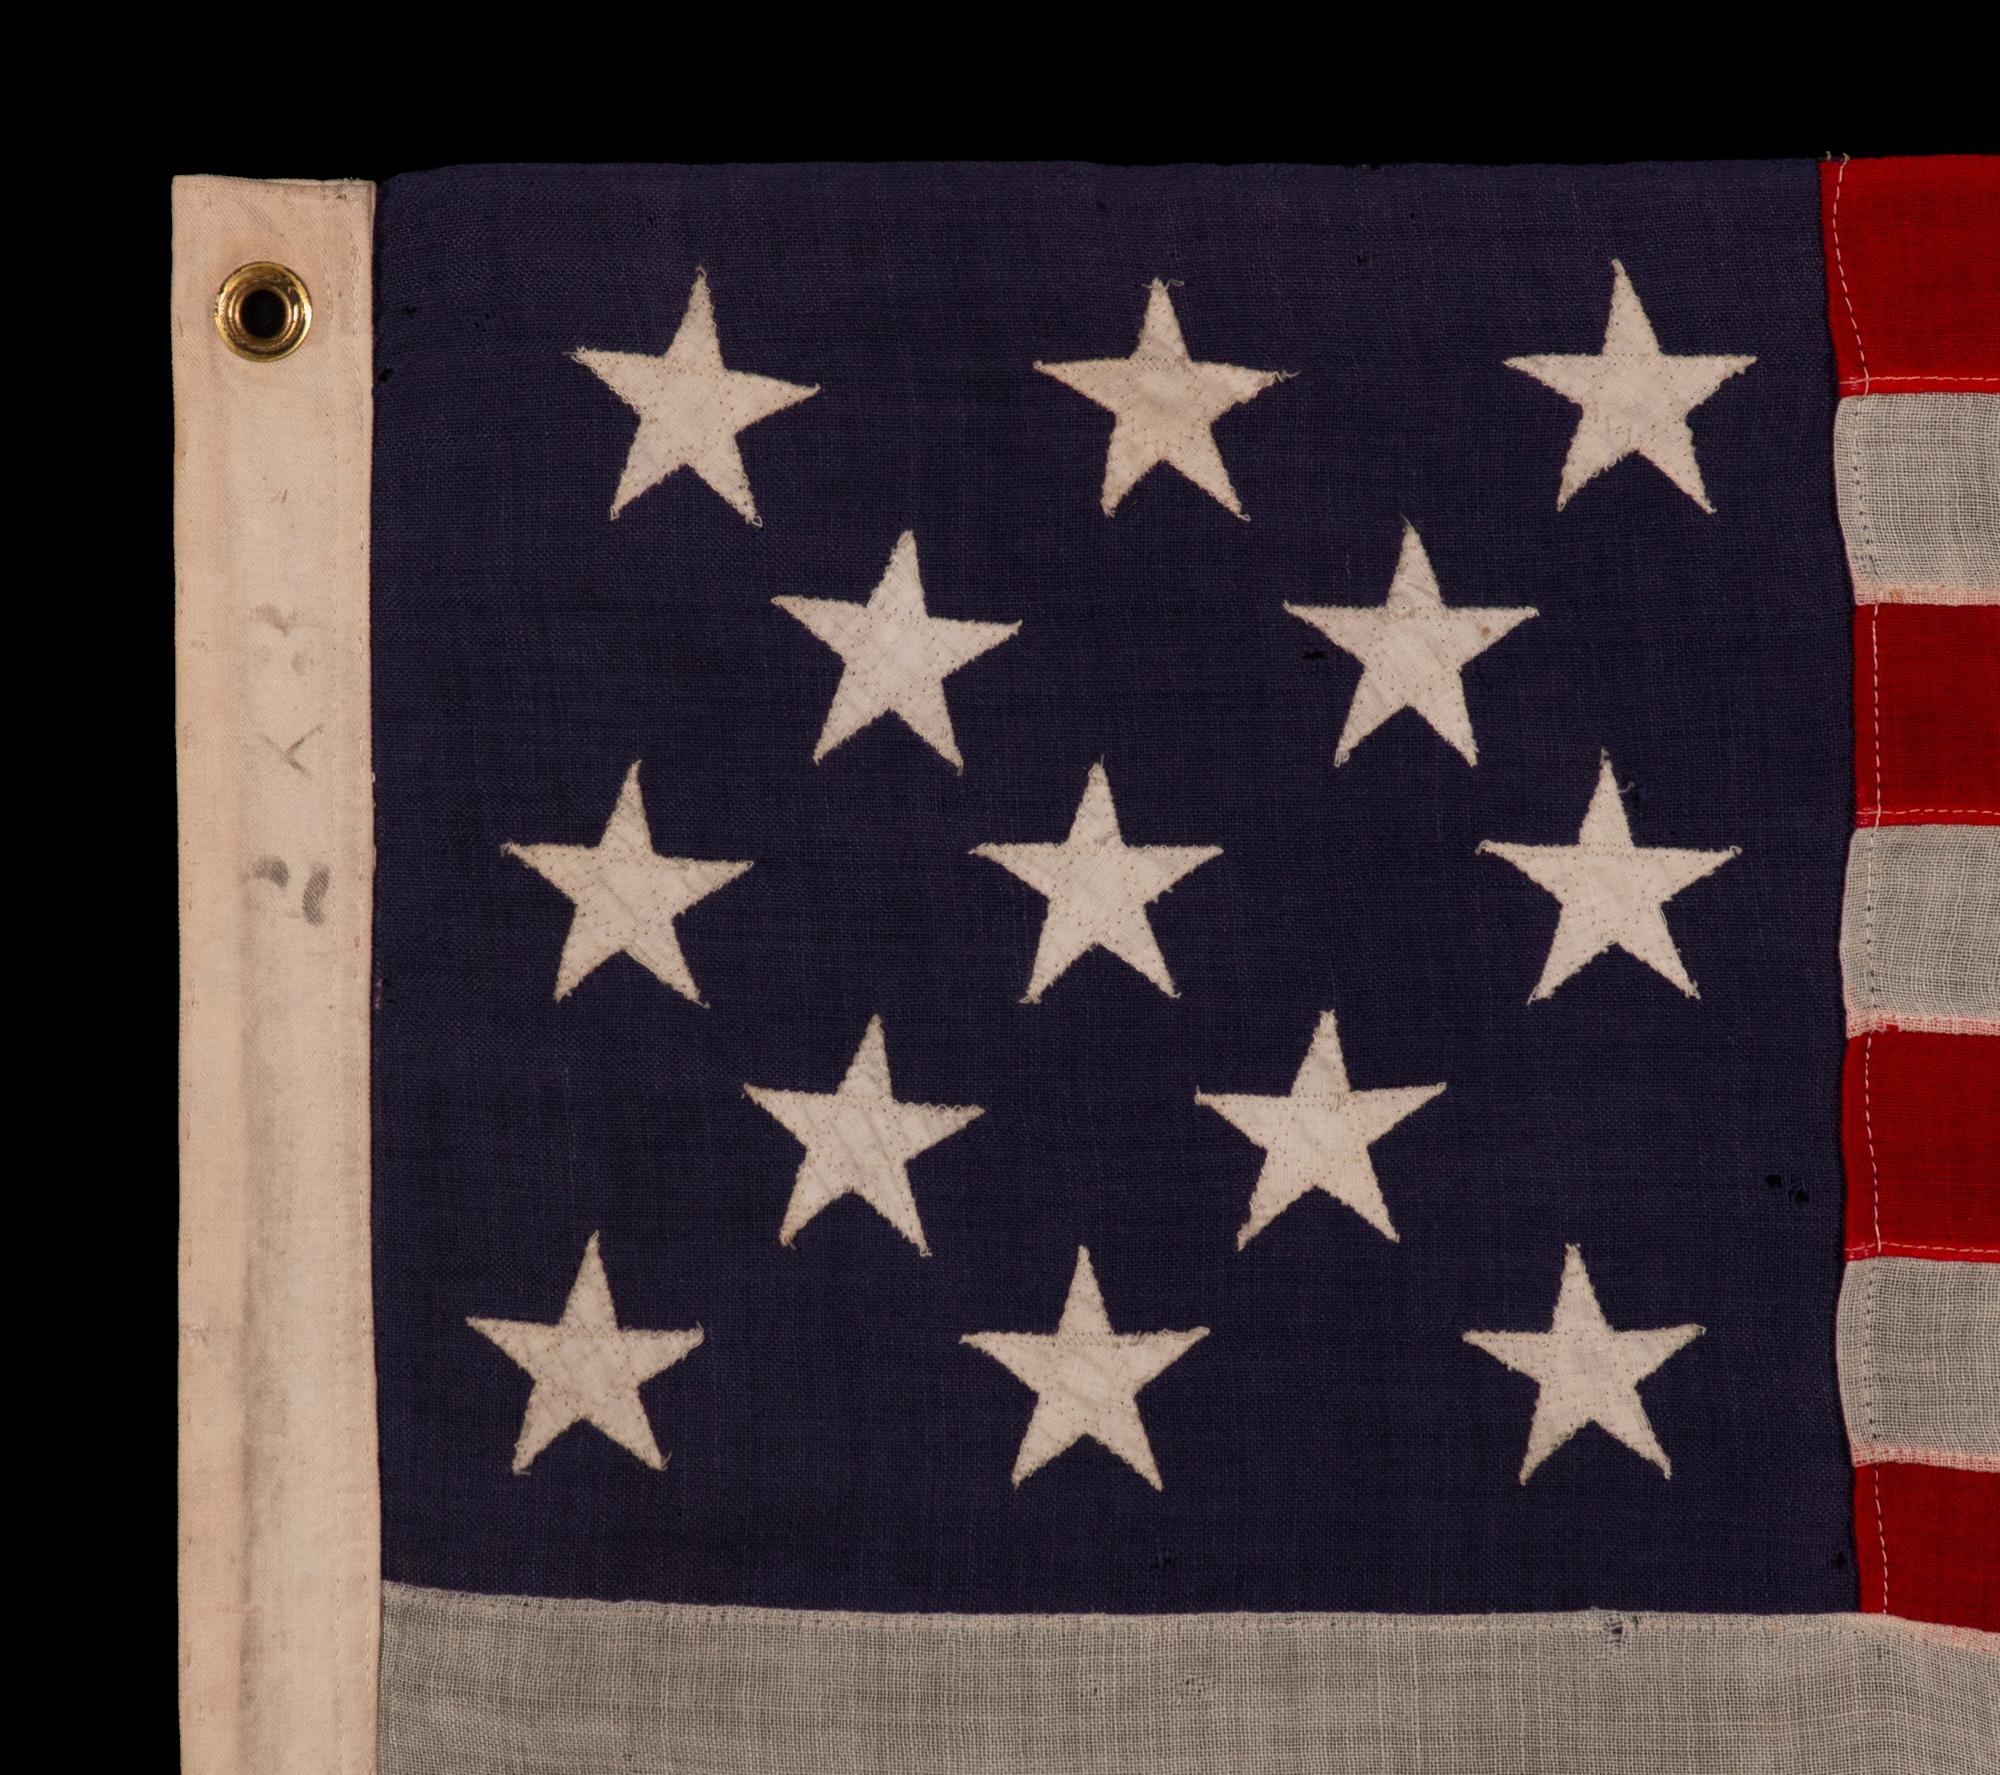 13 STAR ANTIQUE AMERICAN FLAG WITH A 3-2-3-2-3 CONFIGURATION OF STARS ON AN INDIGO CANTON, SQUARISH PROPORTIONS, AND A BEAUTIFUL GLOBAL PRESENTATION, MADE circa 1895-1926

Ce drapeau américain antique à 13 étoiles est d'un type fabriqué au cours de